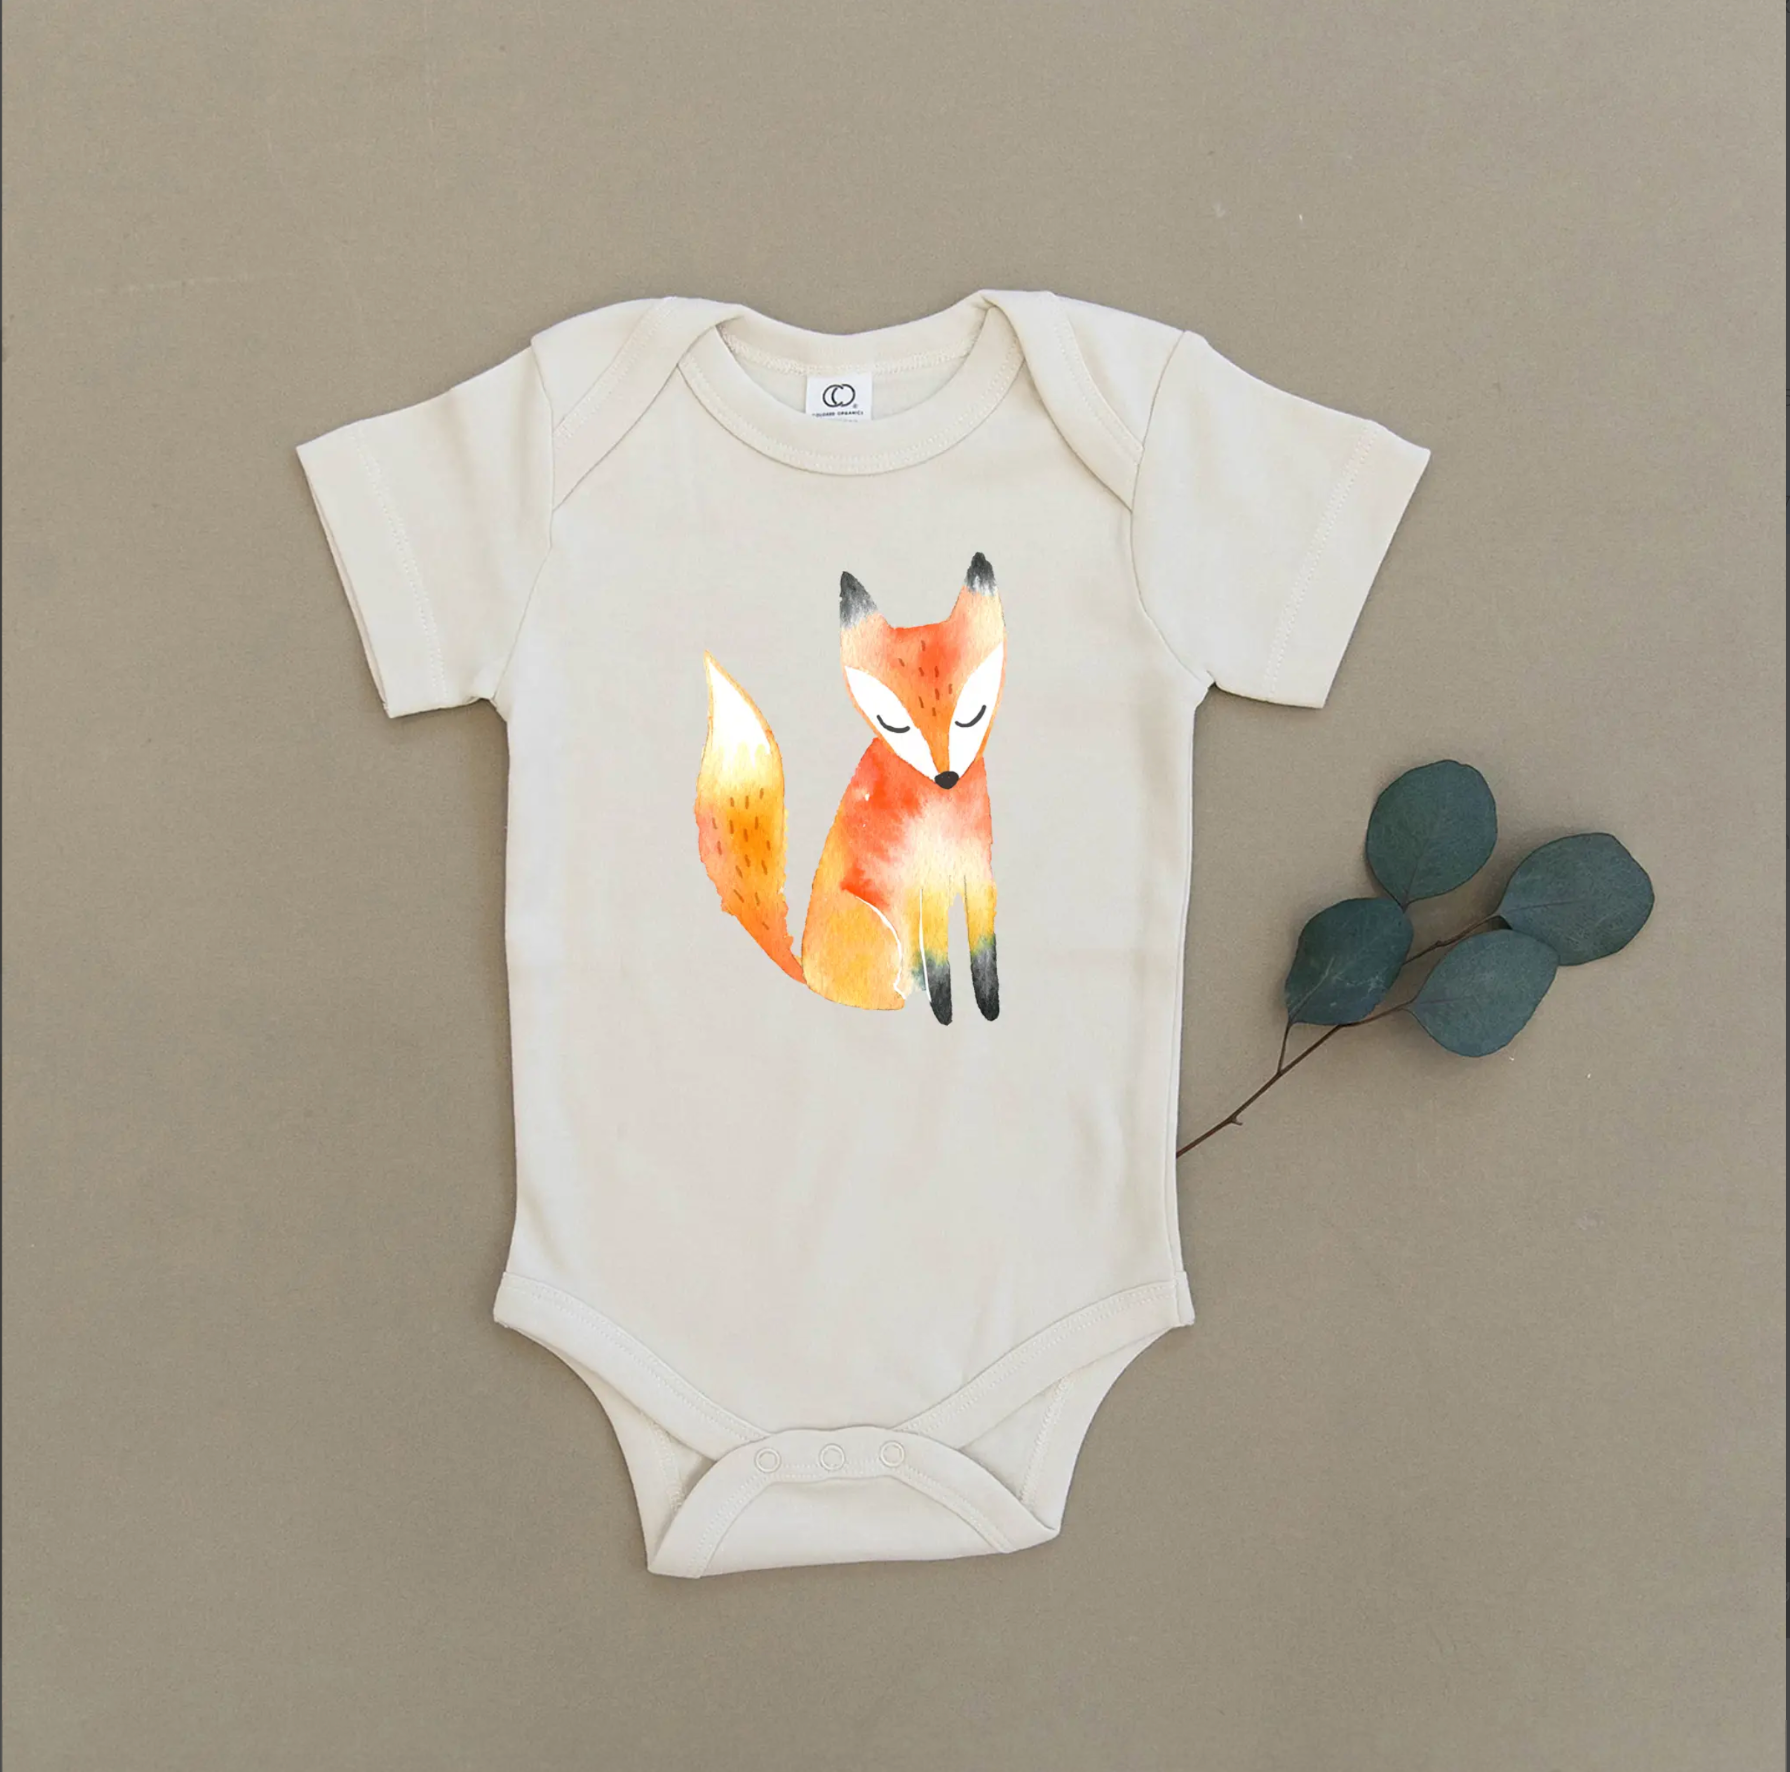 Baby Fox Organic Baby Onesie & Toddler Tee